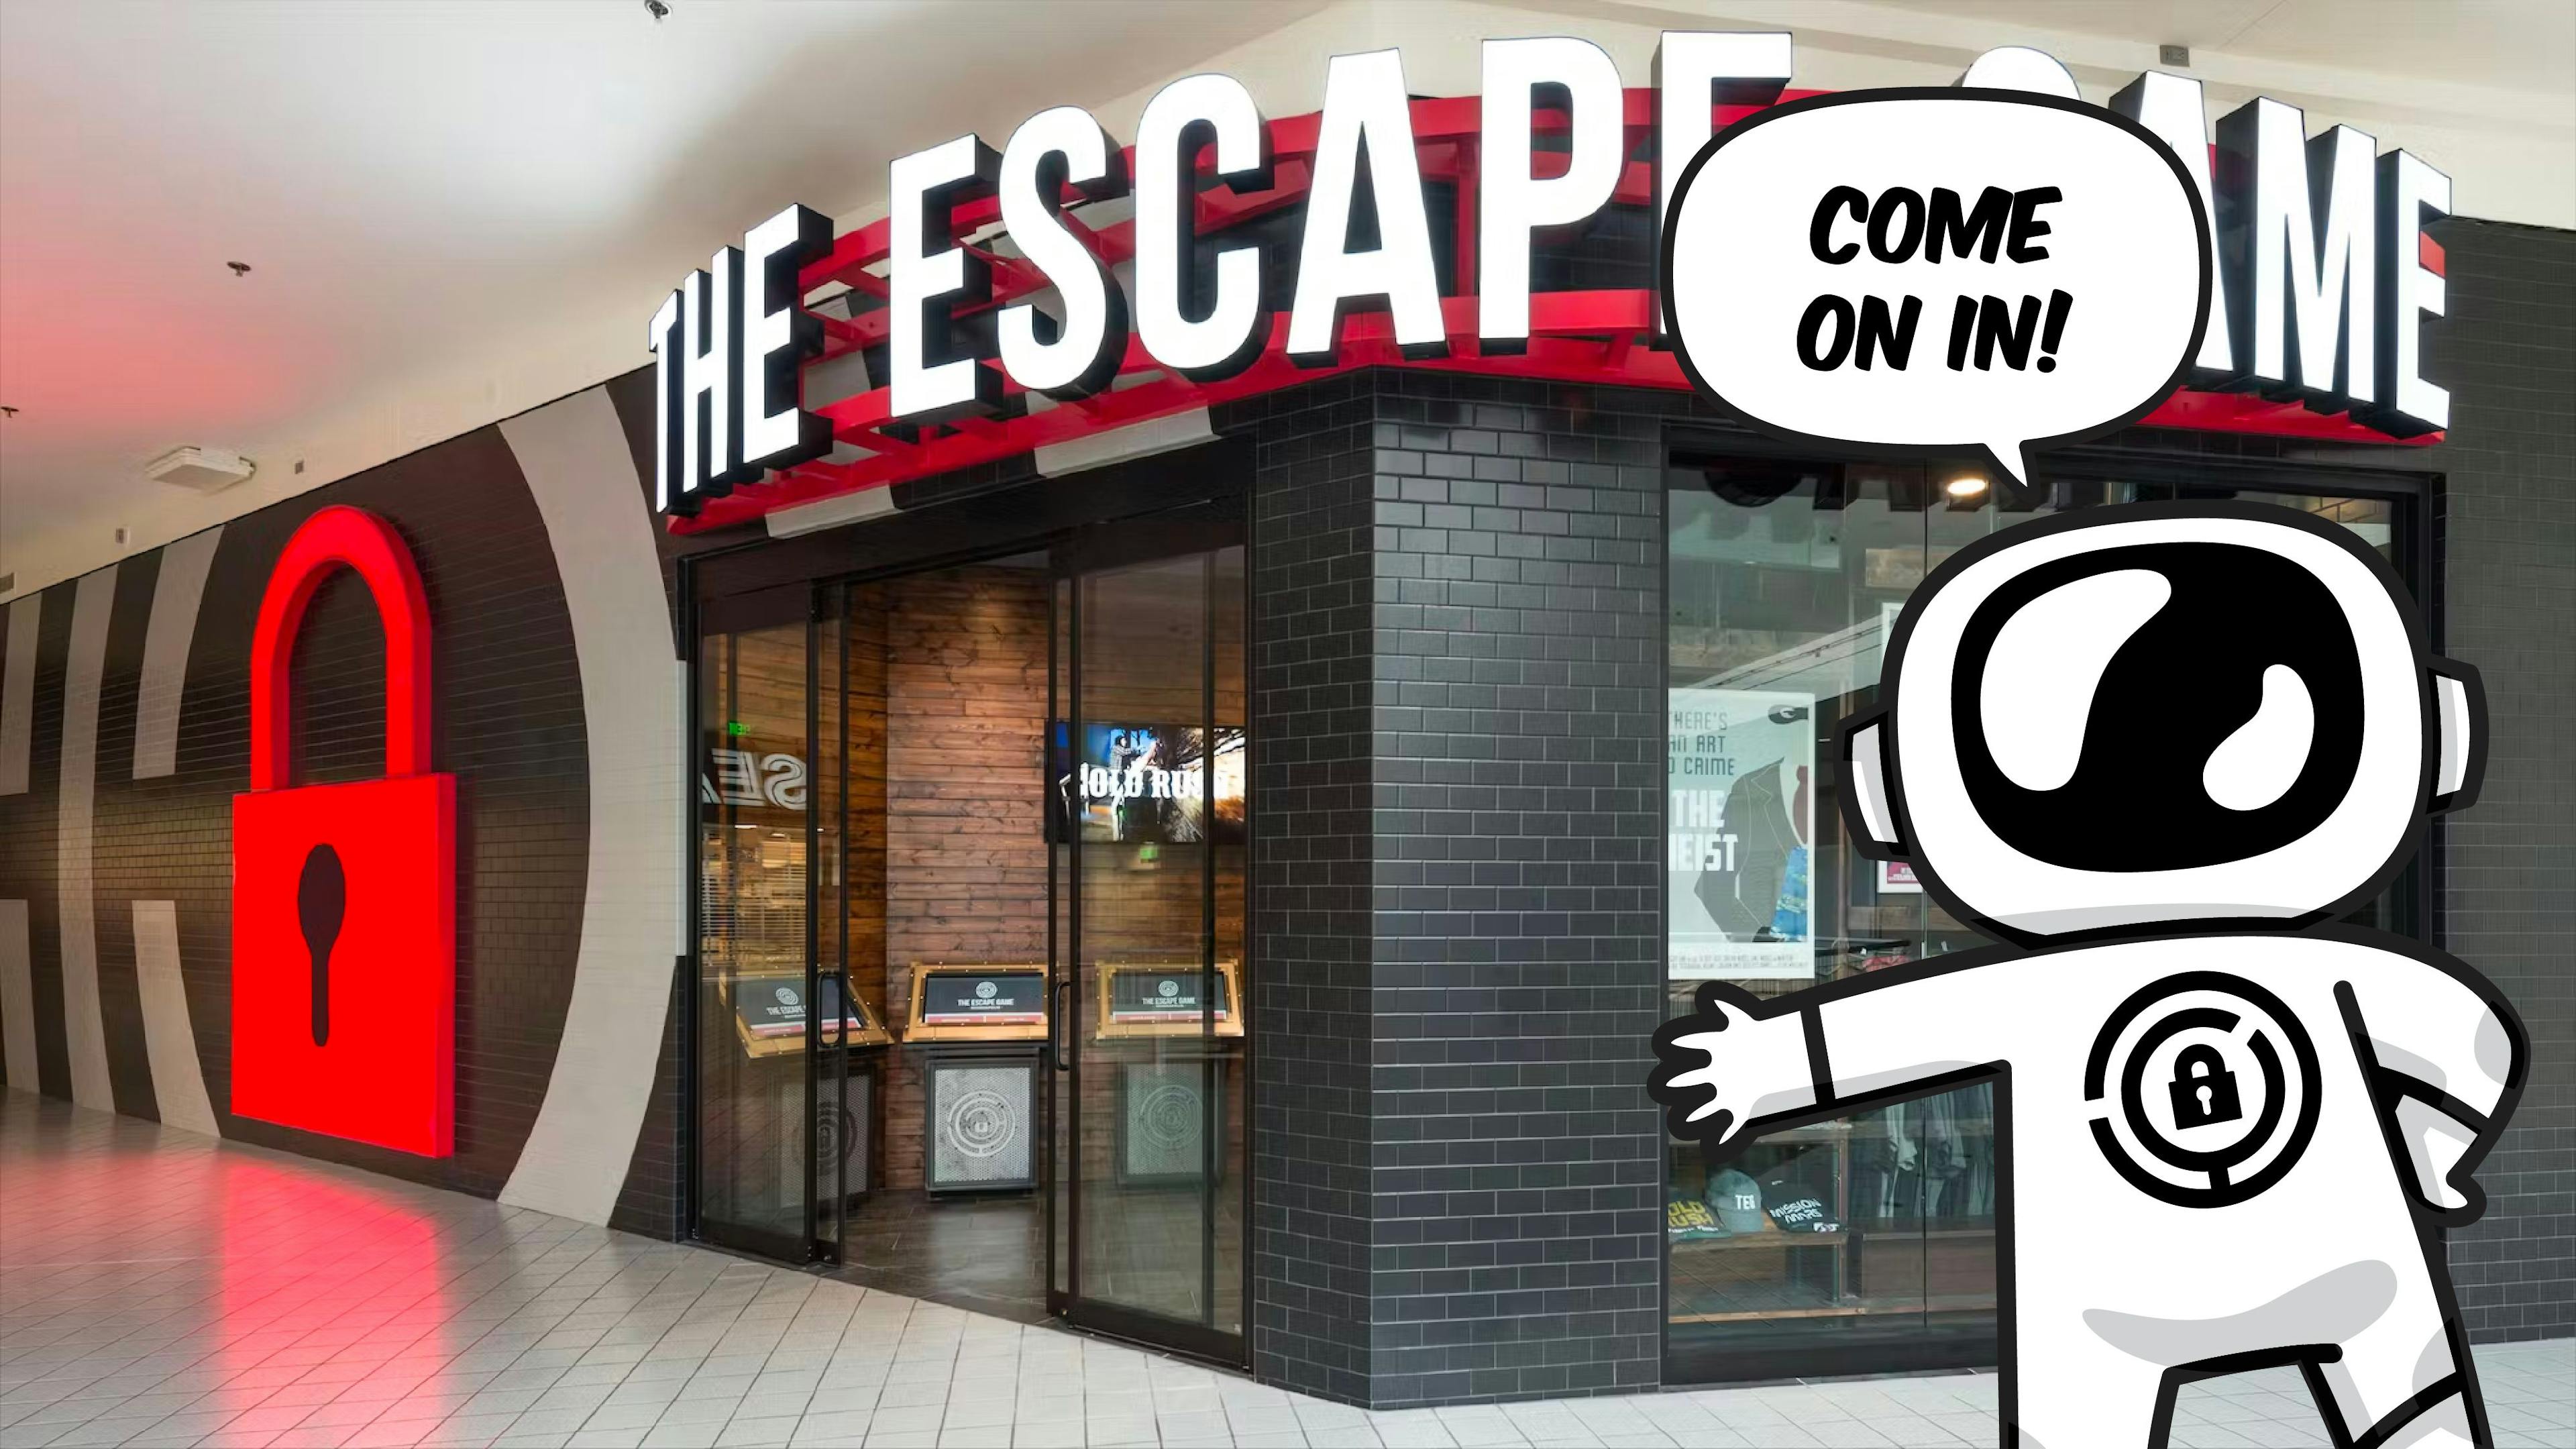 The Escape Game Minneapolis Location Video